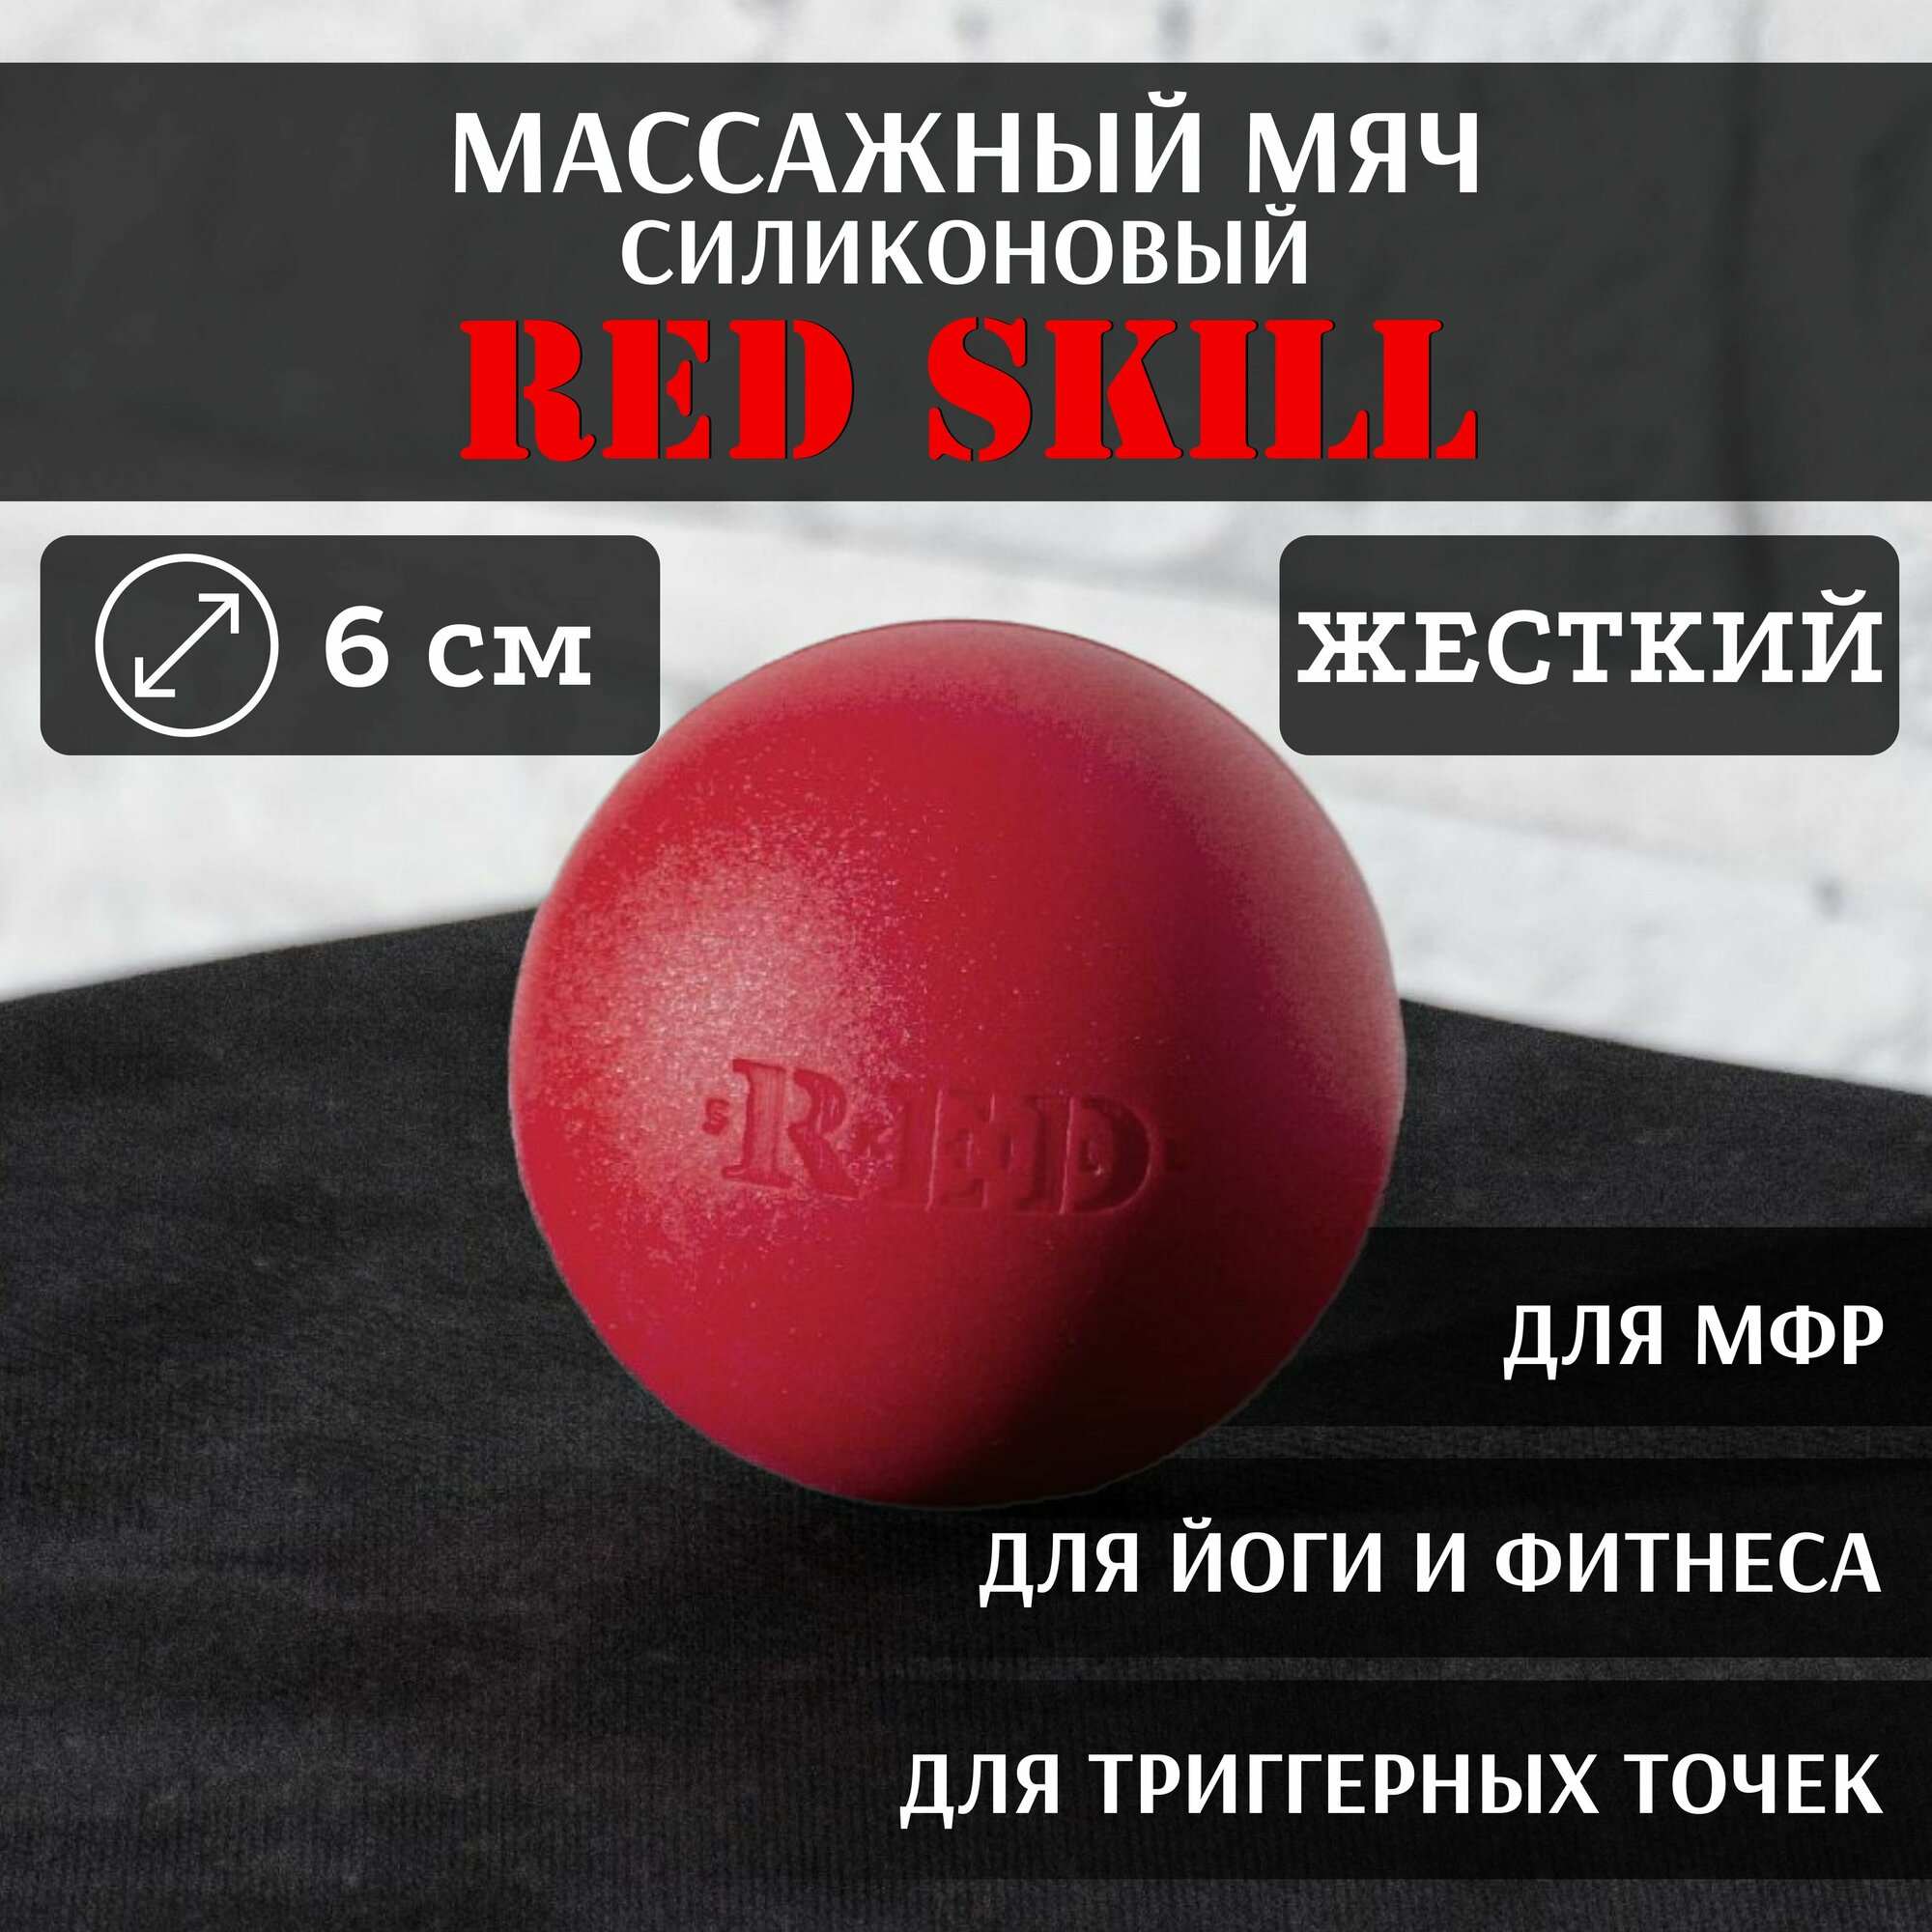 Массажный мяч для МФР, для йоги и фитнеса, для триггерных точек RED Skill Hard, 6 см